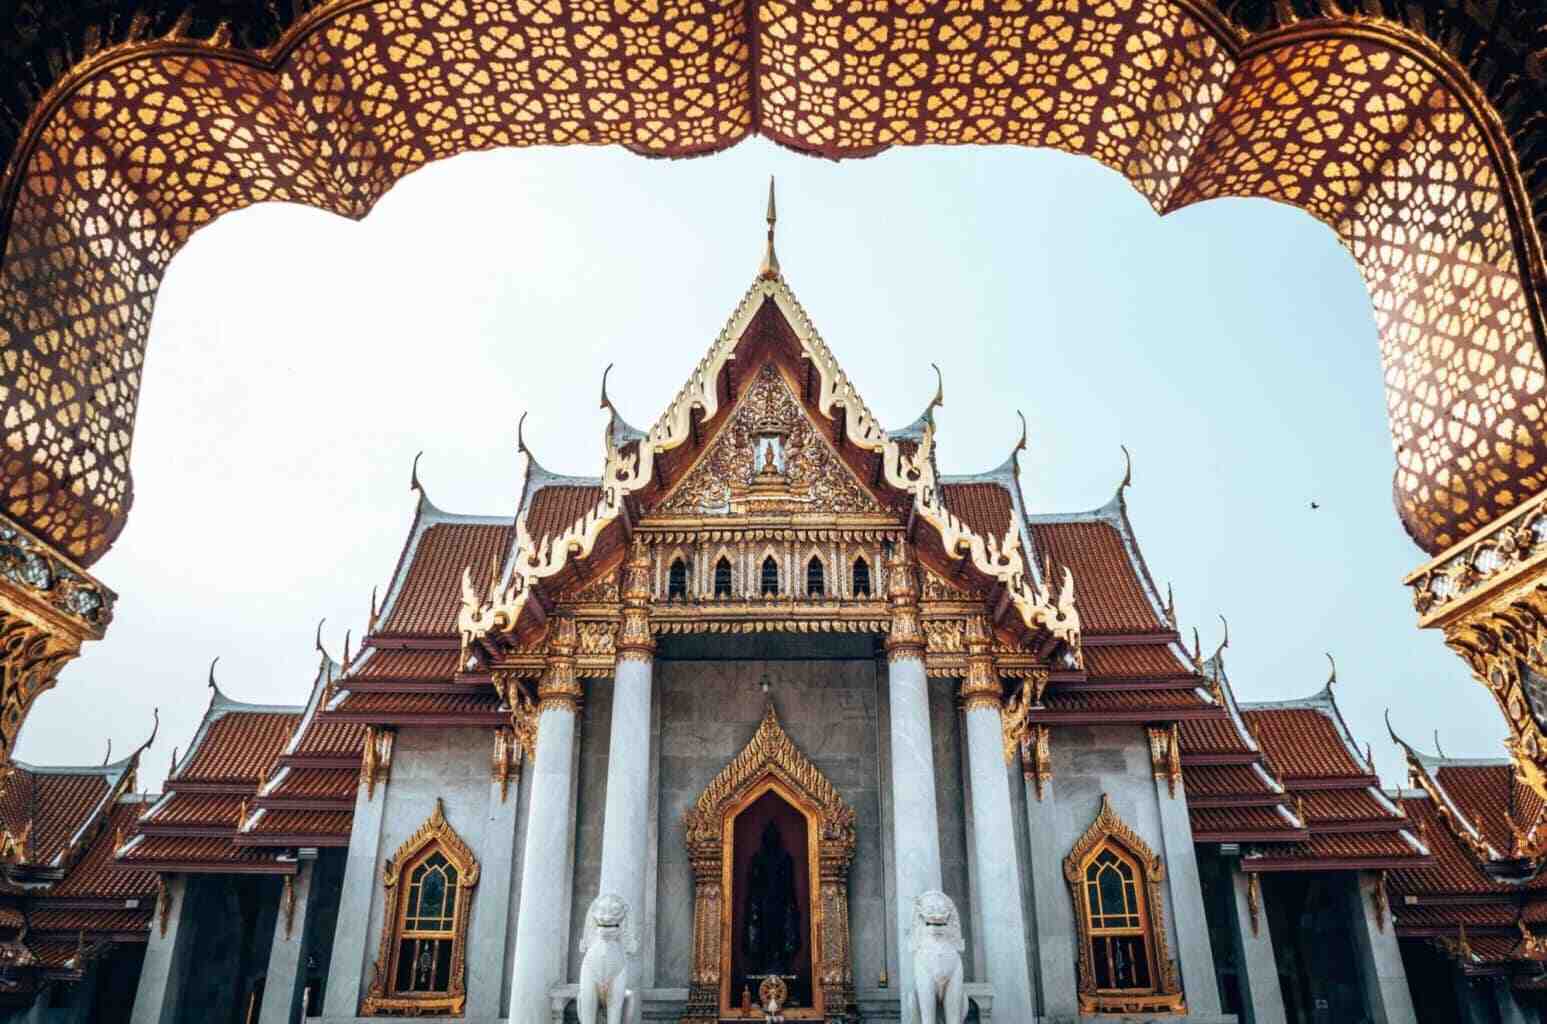 De ce documente am nevoie pentru a merge în Thailanda?